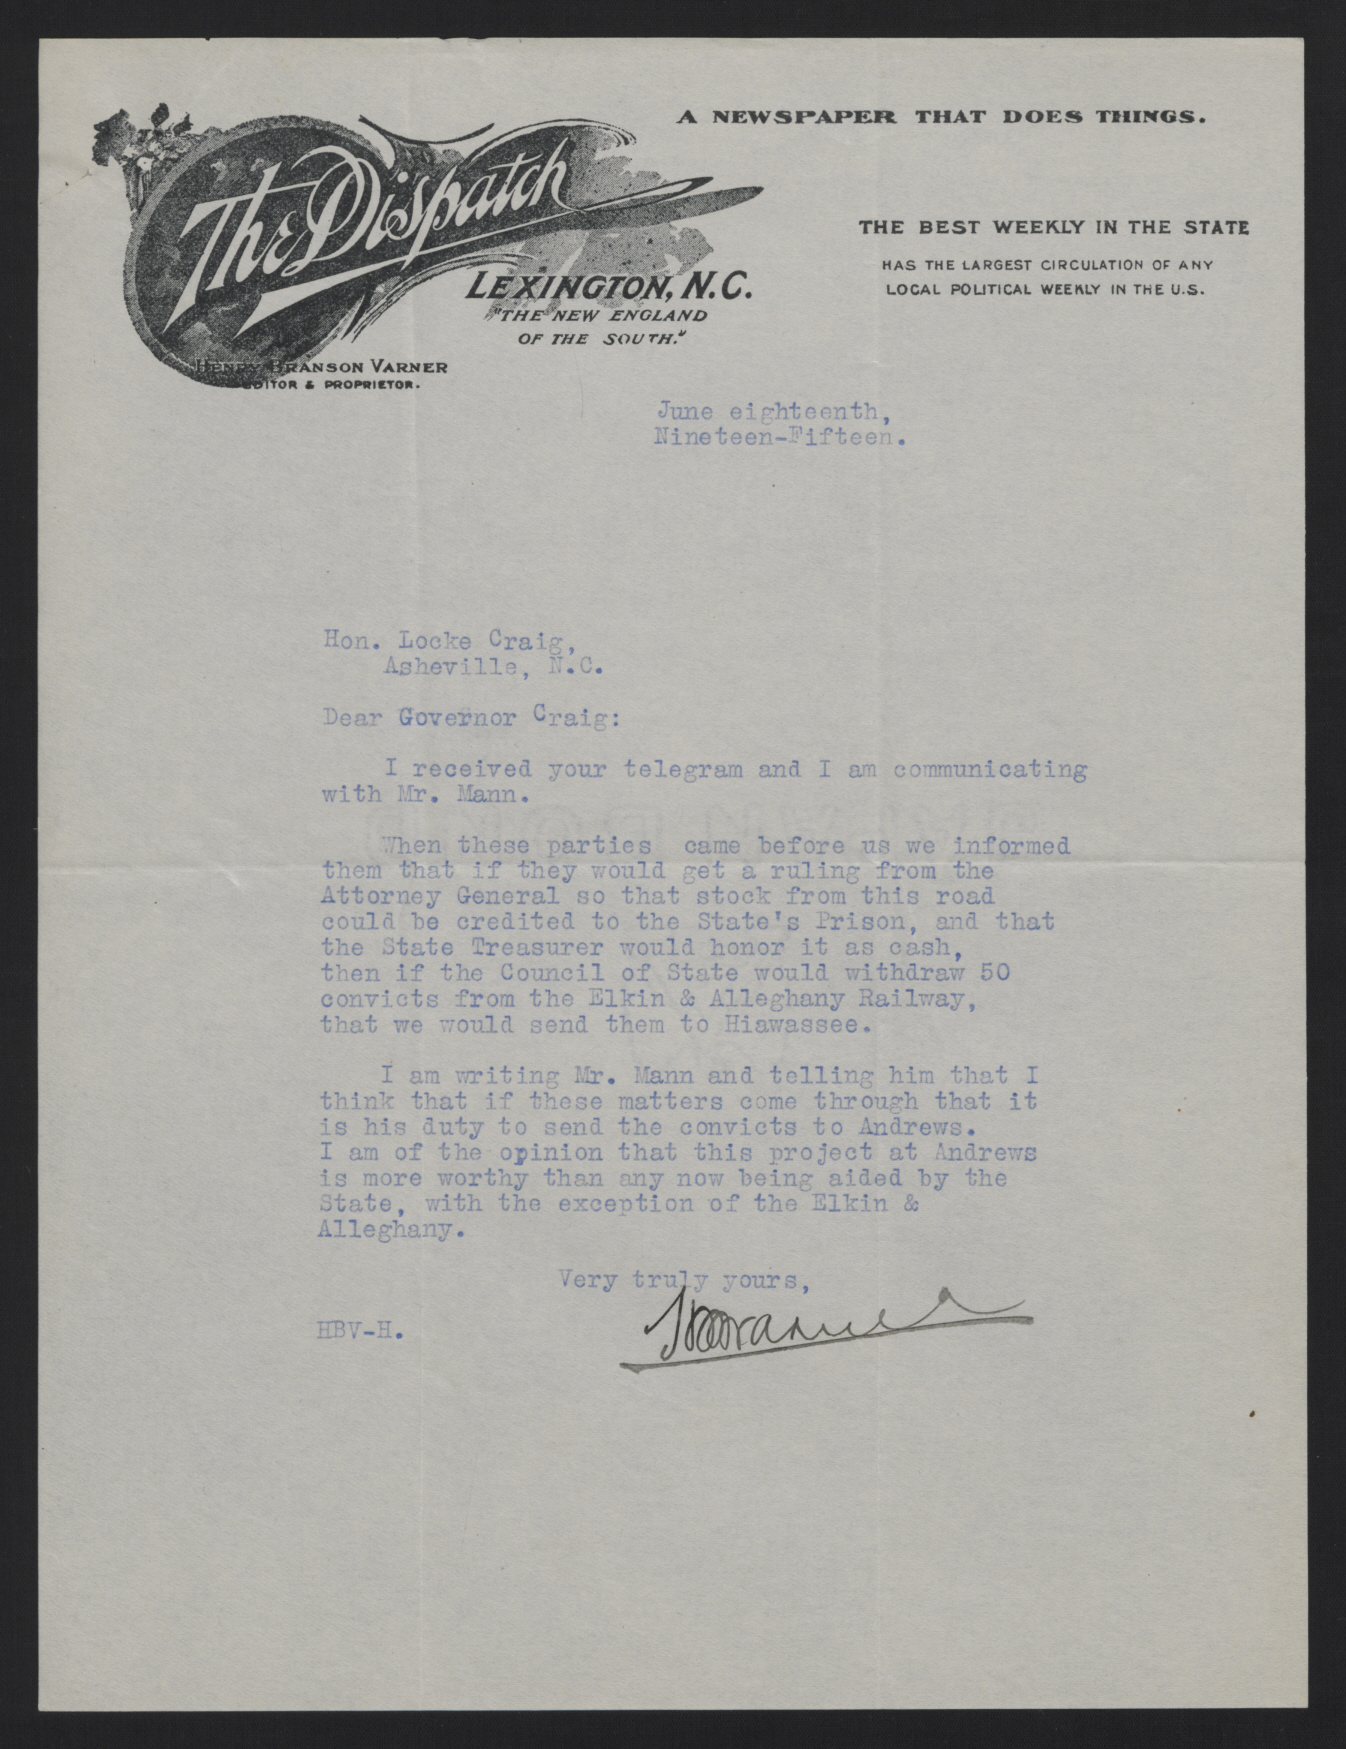 Letter from Varner to Craig, June 18, 1915